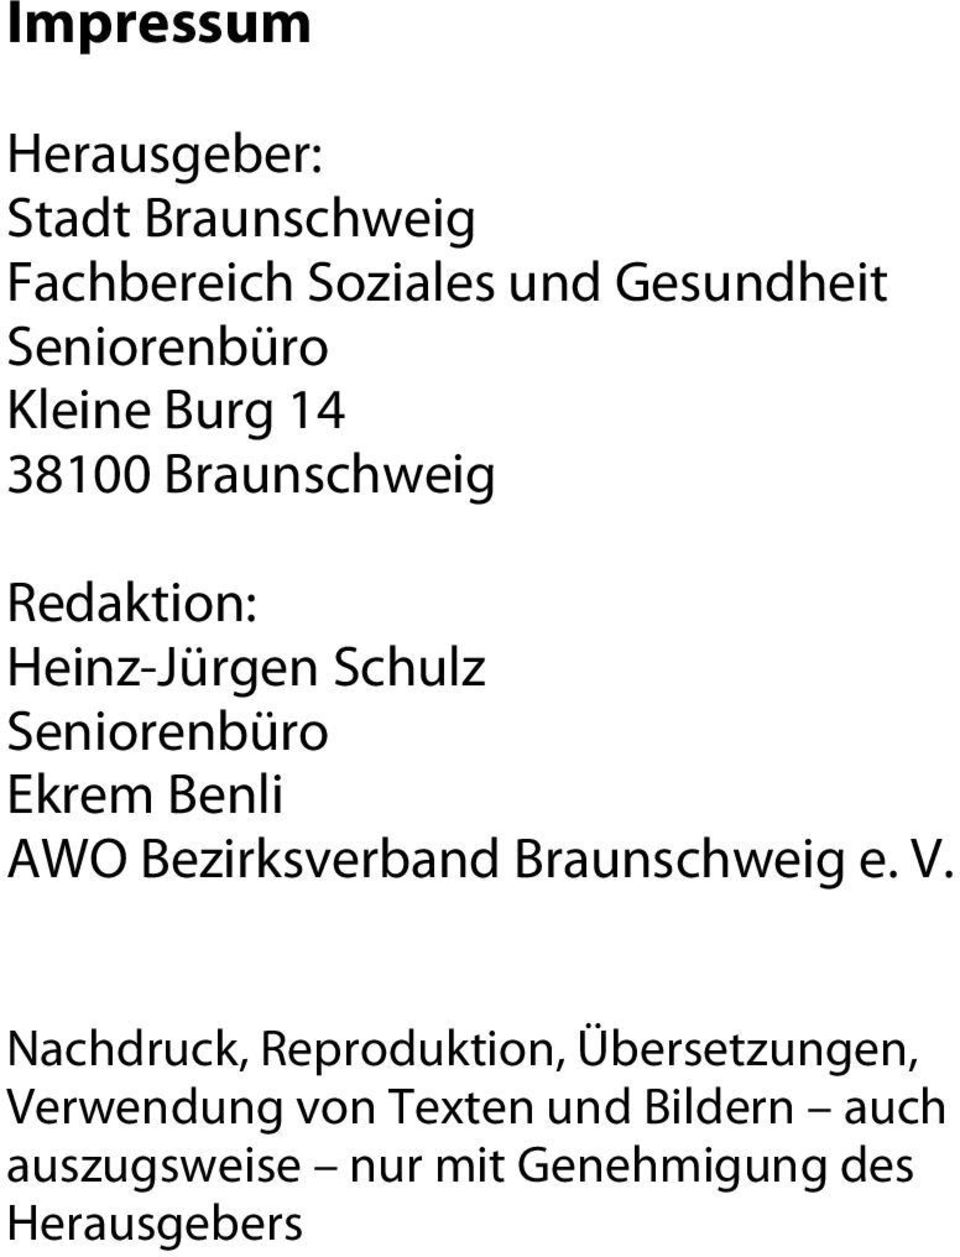 Seniorenbüro Ekrem Benli AWO Bezirksverband Braunschweig e. V.